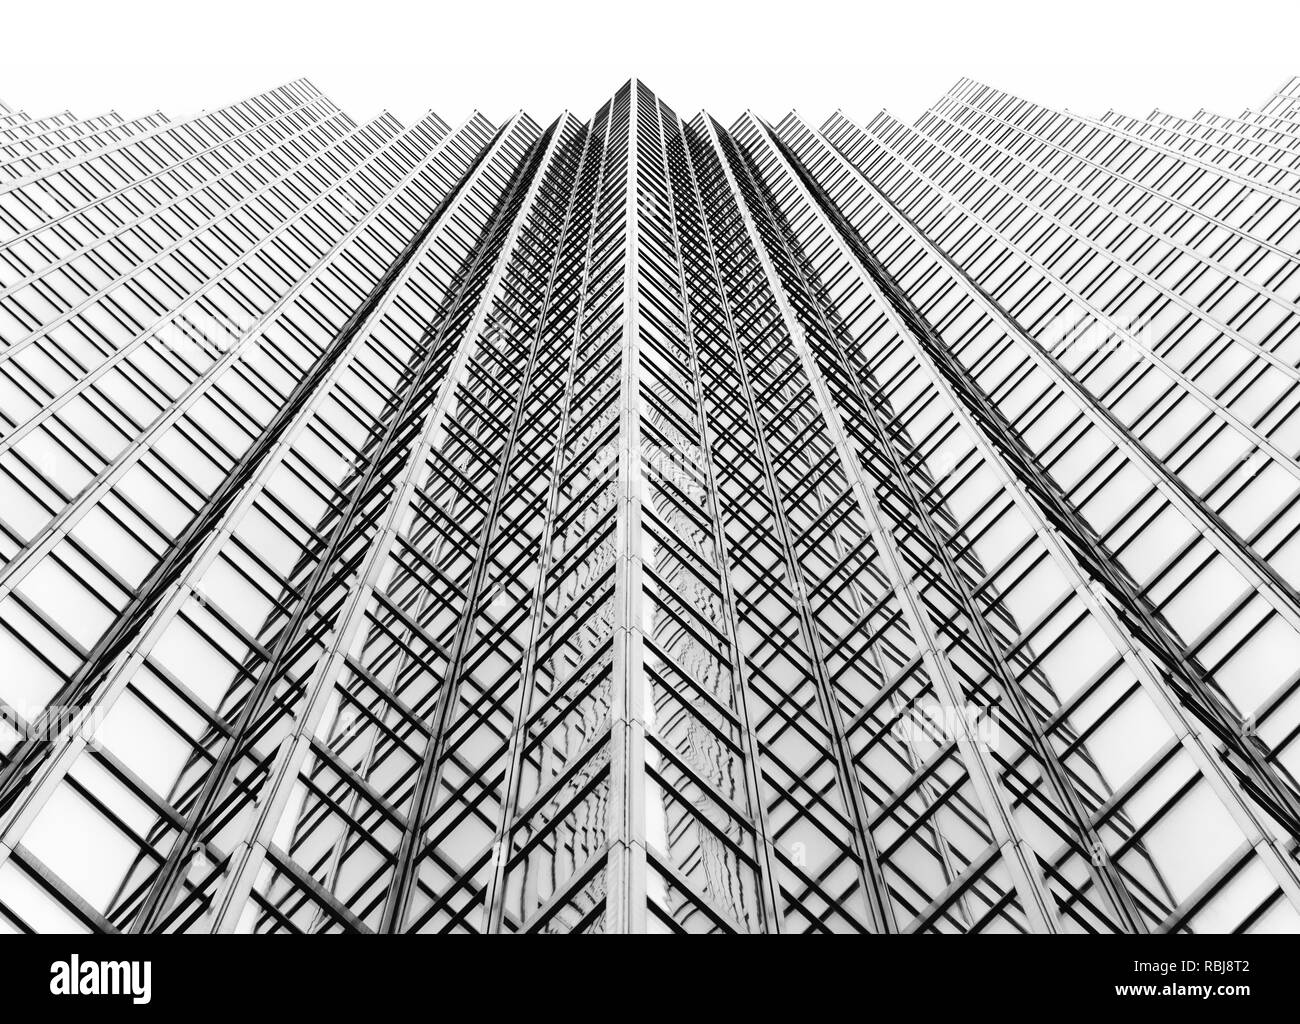 Jusqu'à la à la Banque Royale du Canada (RBC) construction de South Plaza Tower sur Front Street, au centre-ville de Toronto, Canada Banque D'Images